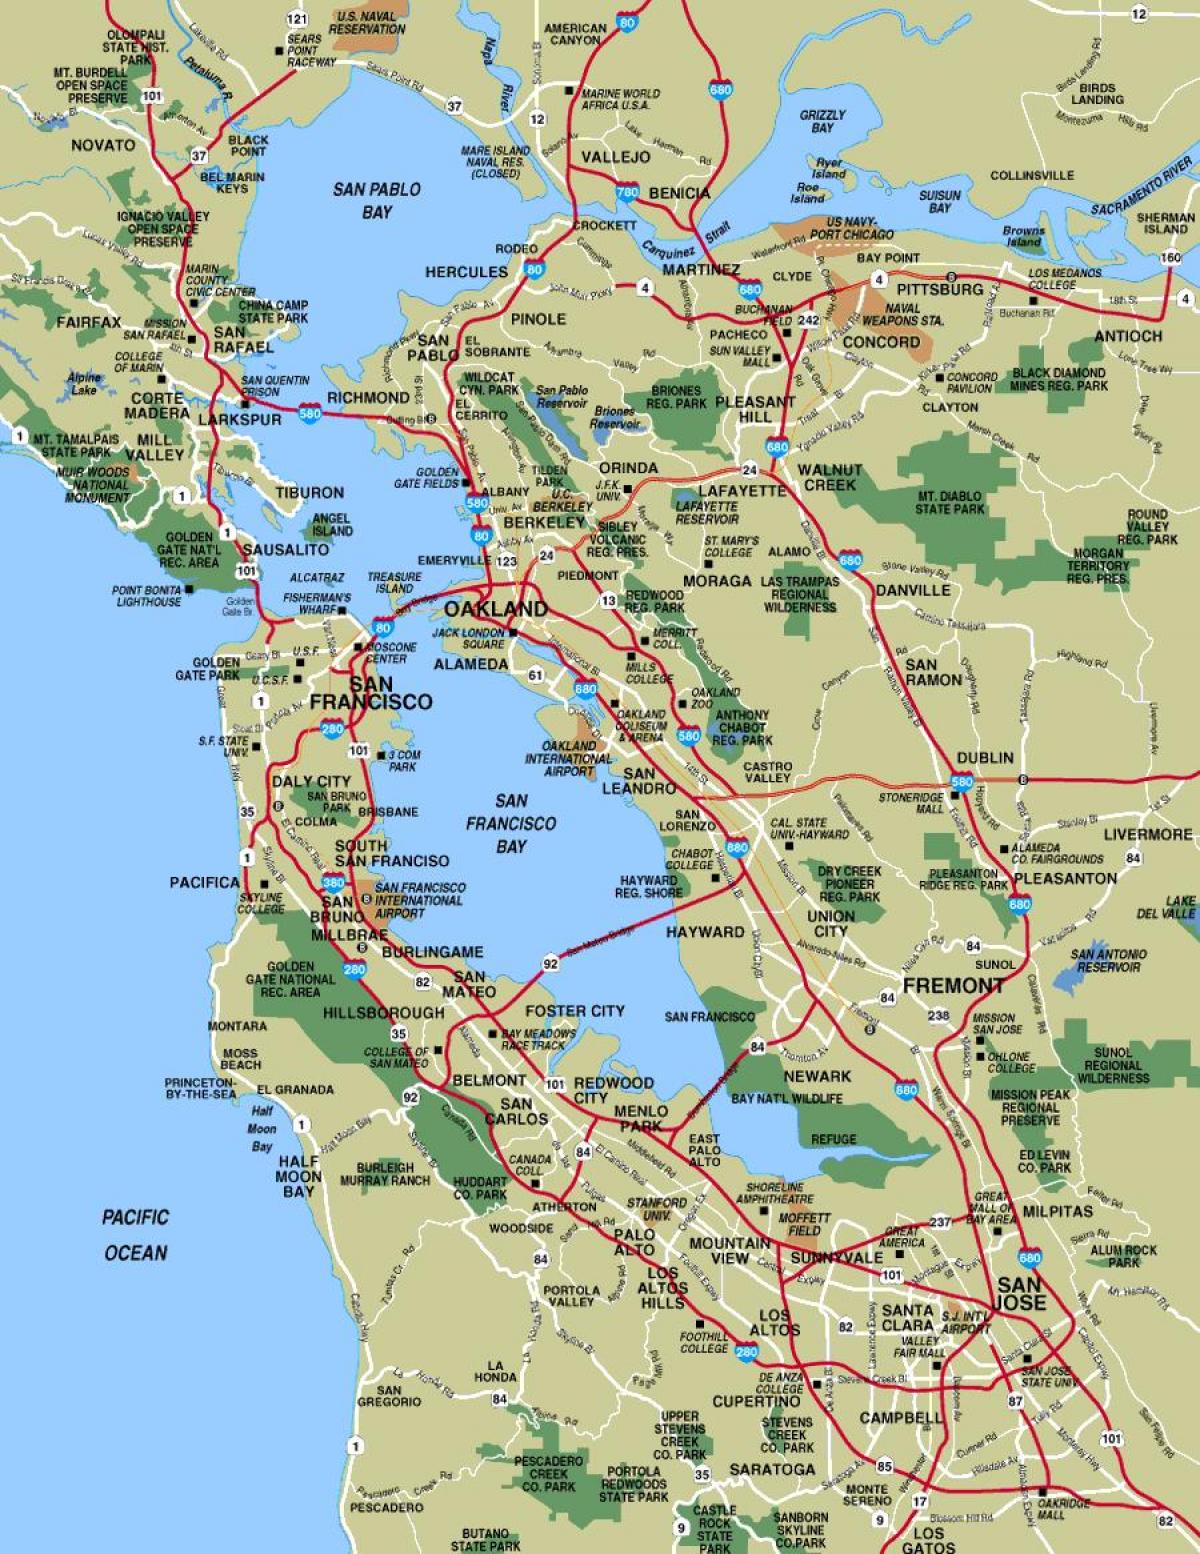 नक्शे के साथ सैन फ्रांसिस्को क्षेत्र के कस्बों